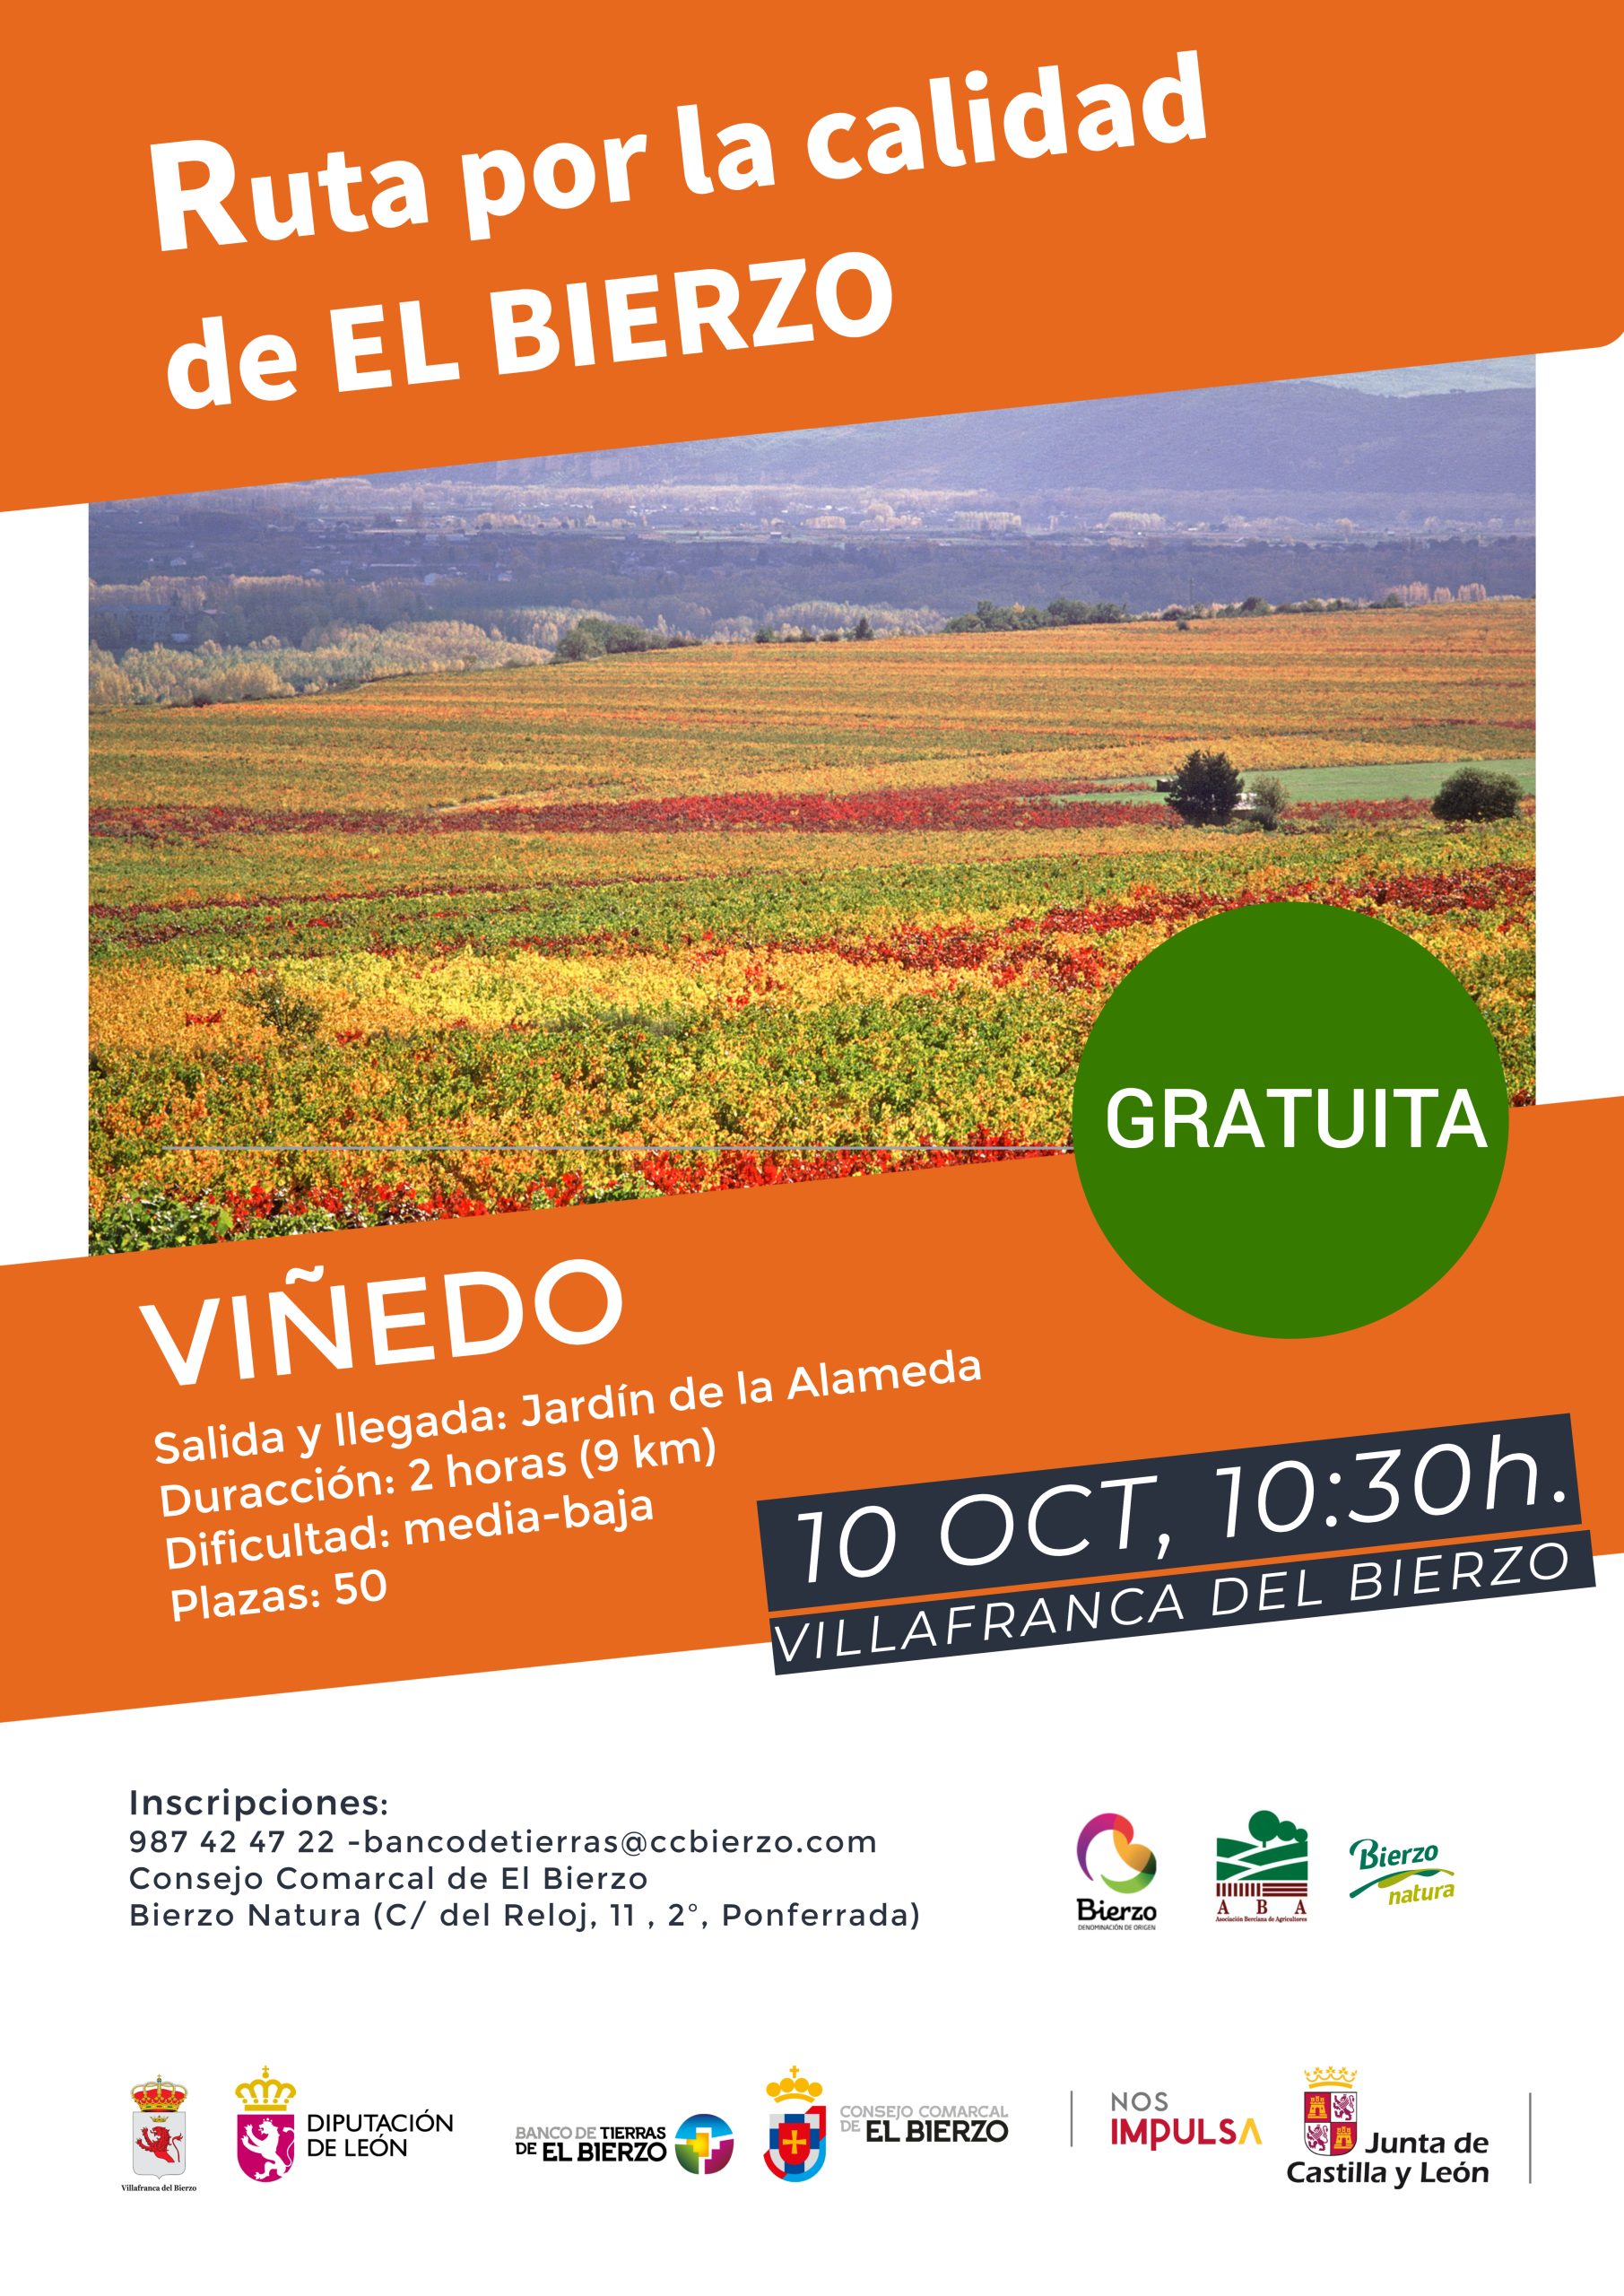 Villafranca del Bierzo acoge el domingo la Ruta por la calidad del Viñedo organizada por el Consejo Comarcal 2